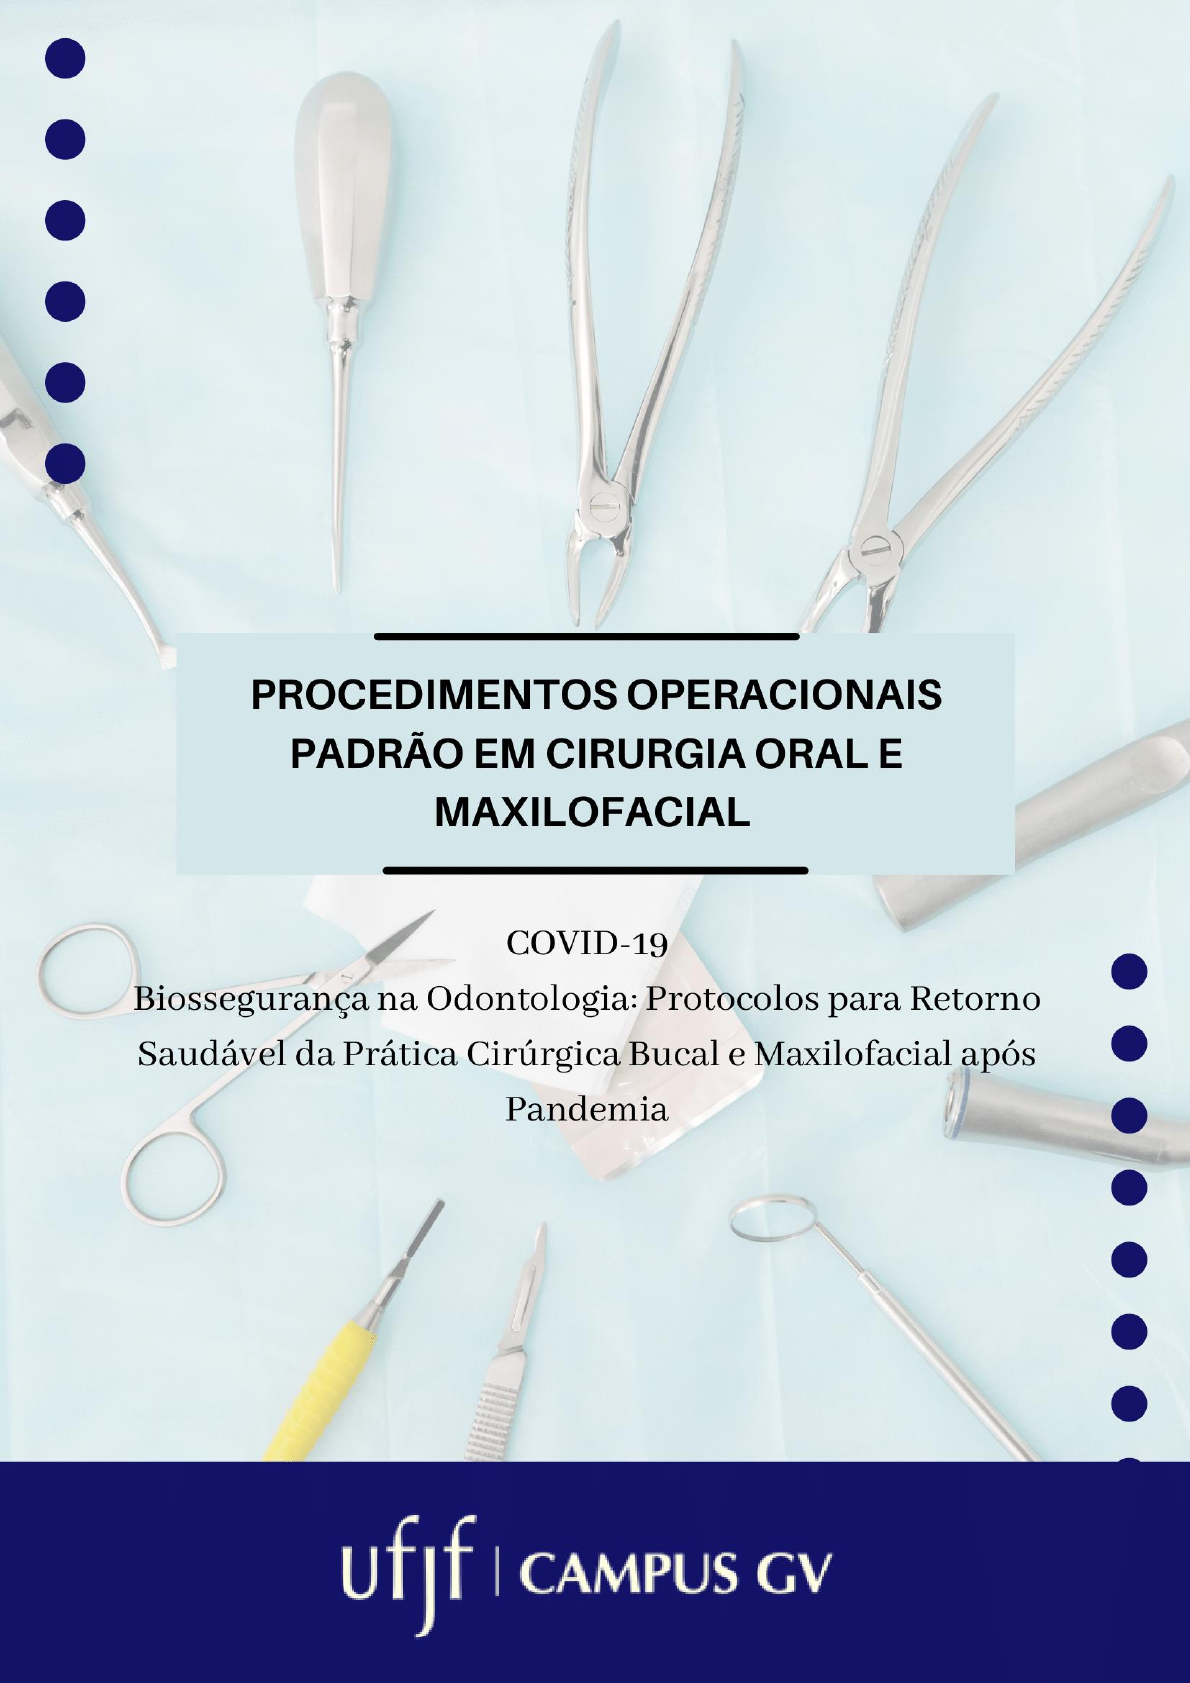 Kit básico para Lipoaspiração de mento  Rhosse Instrumentos e Equipamentos  Cirúrgicos